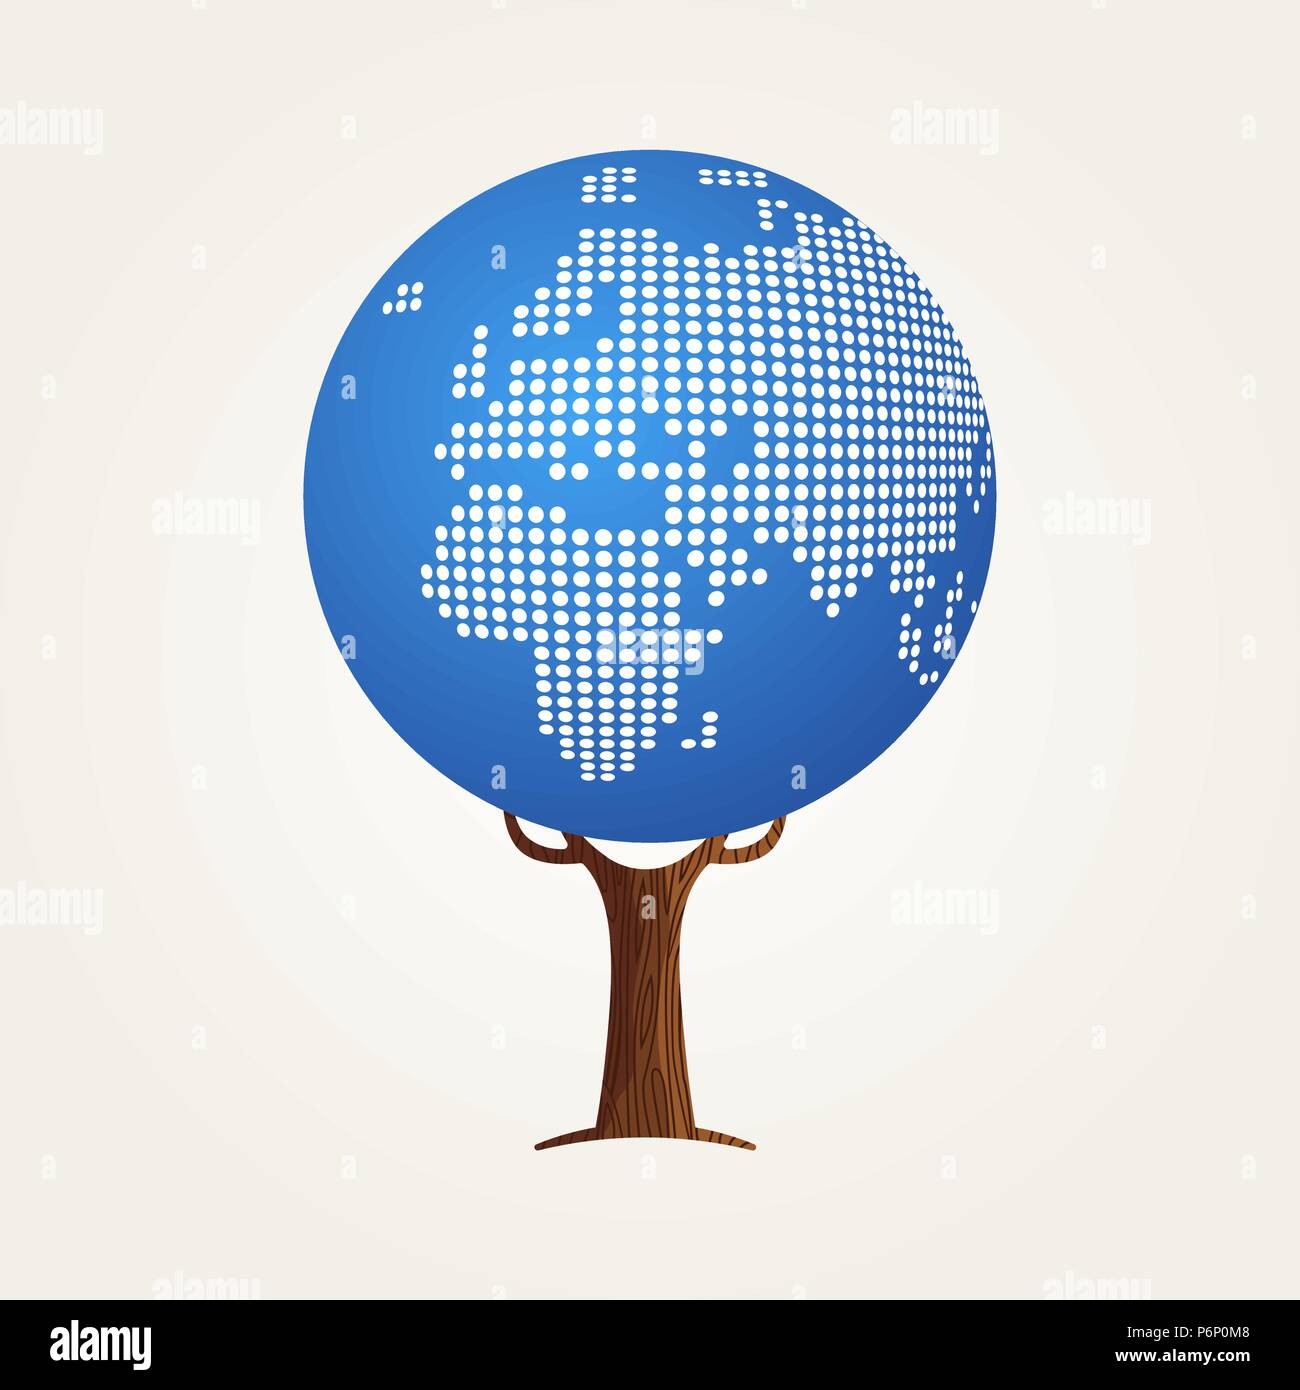 Baum aus Europa und Afrika Weltkarte. Konzept Abbildung über globale Kommunikation, Internet Projekt oder weltweit. EPS 10 Vektor. Stock Vektor